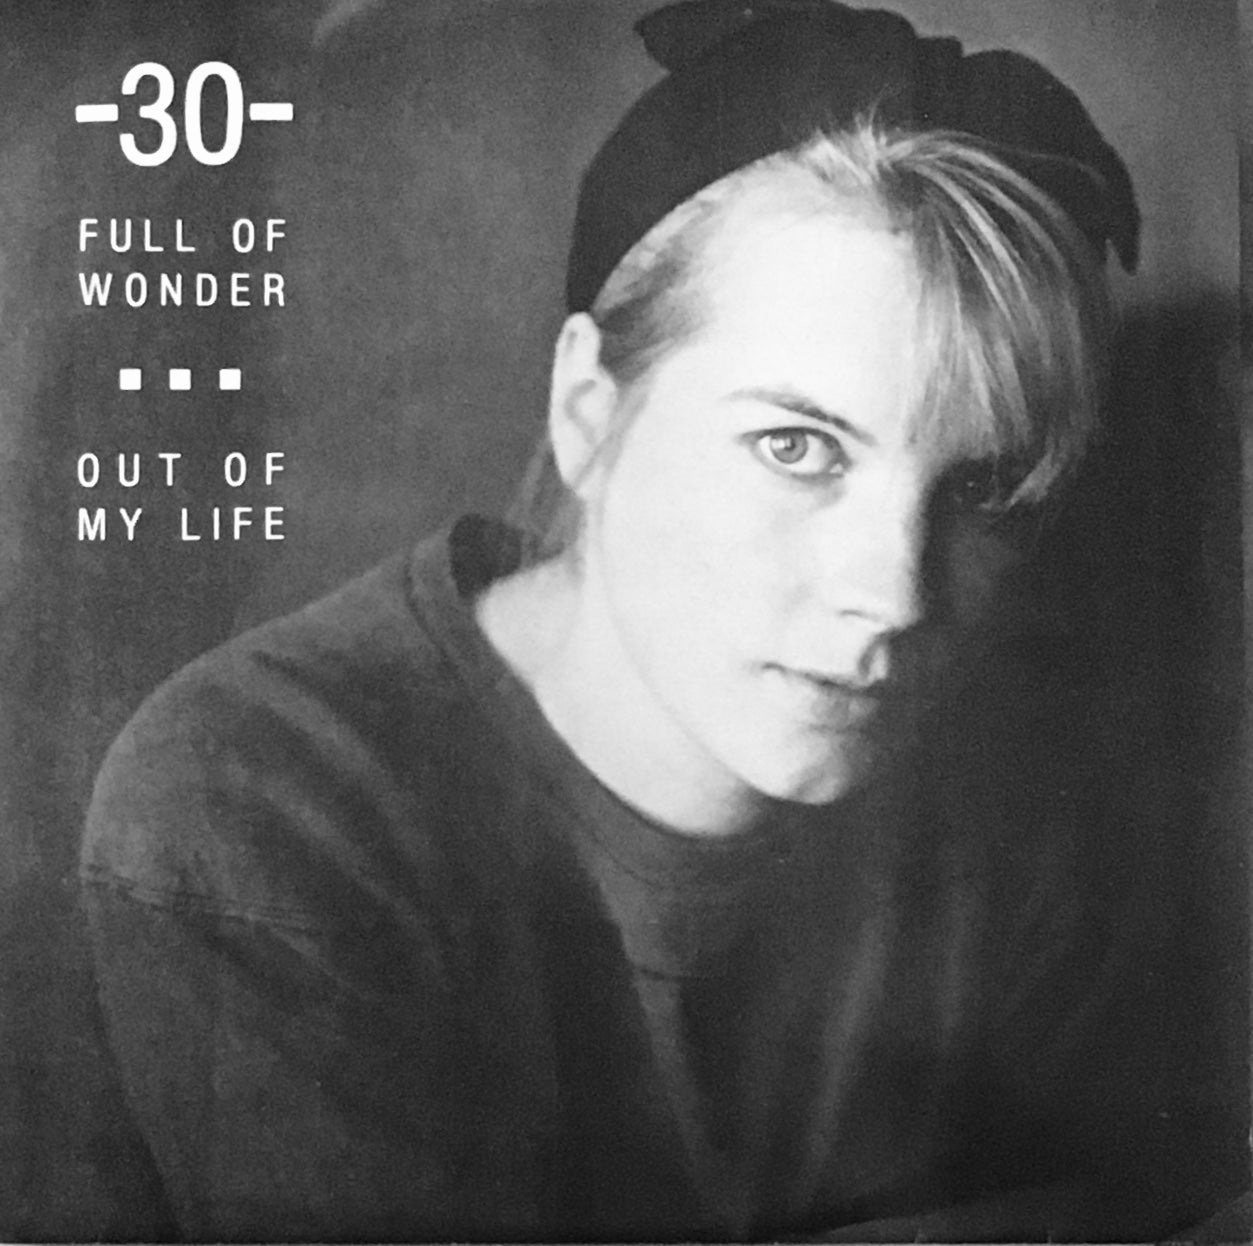 -30- “Full Of Wonder” Single (1986)